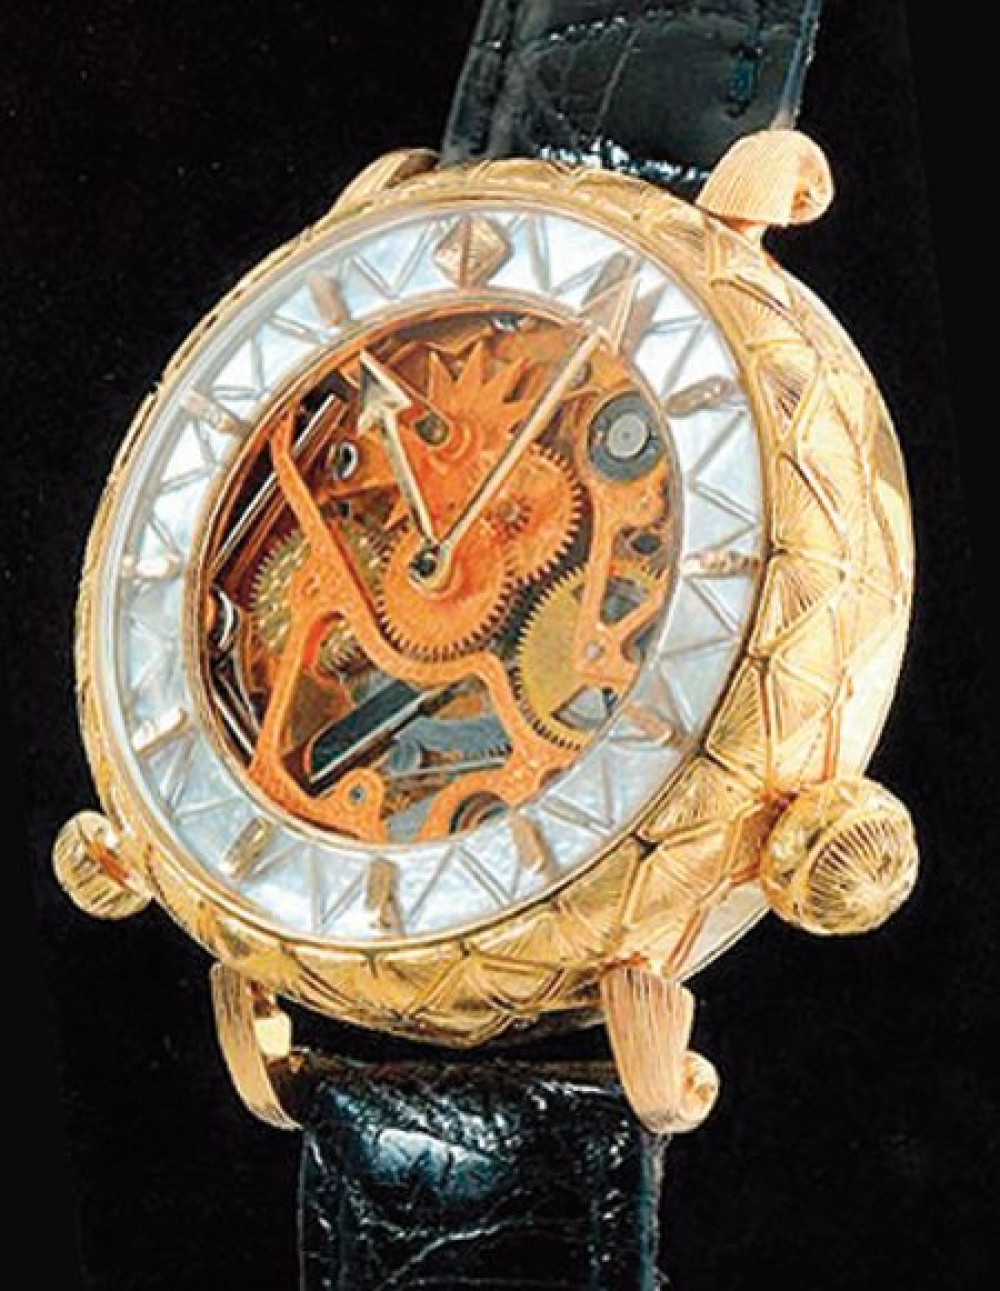 Zegarek firmy Zannetti, model Repeater